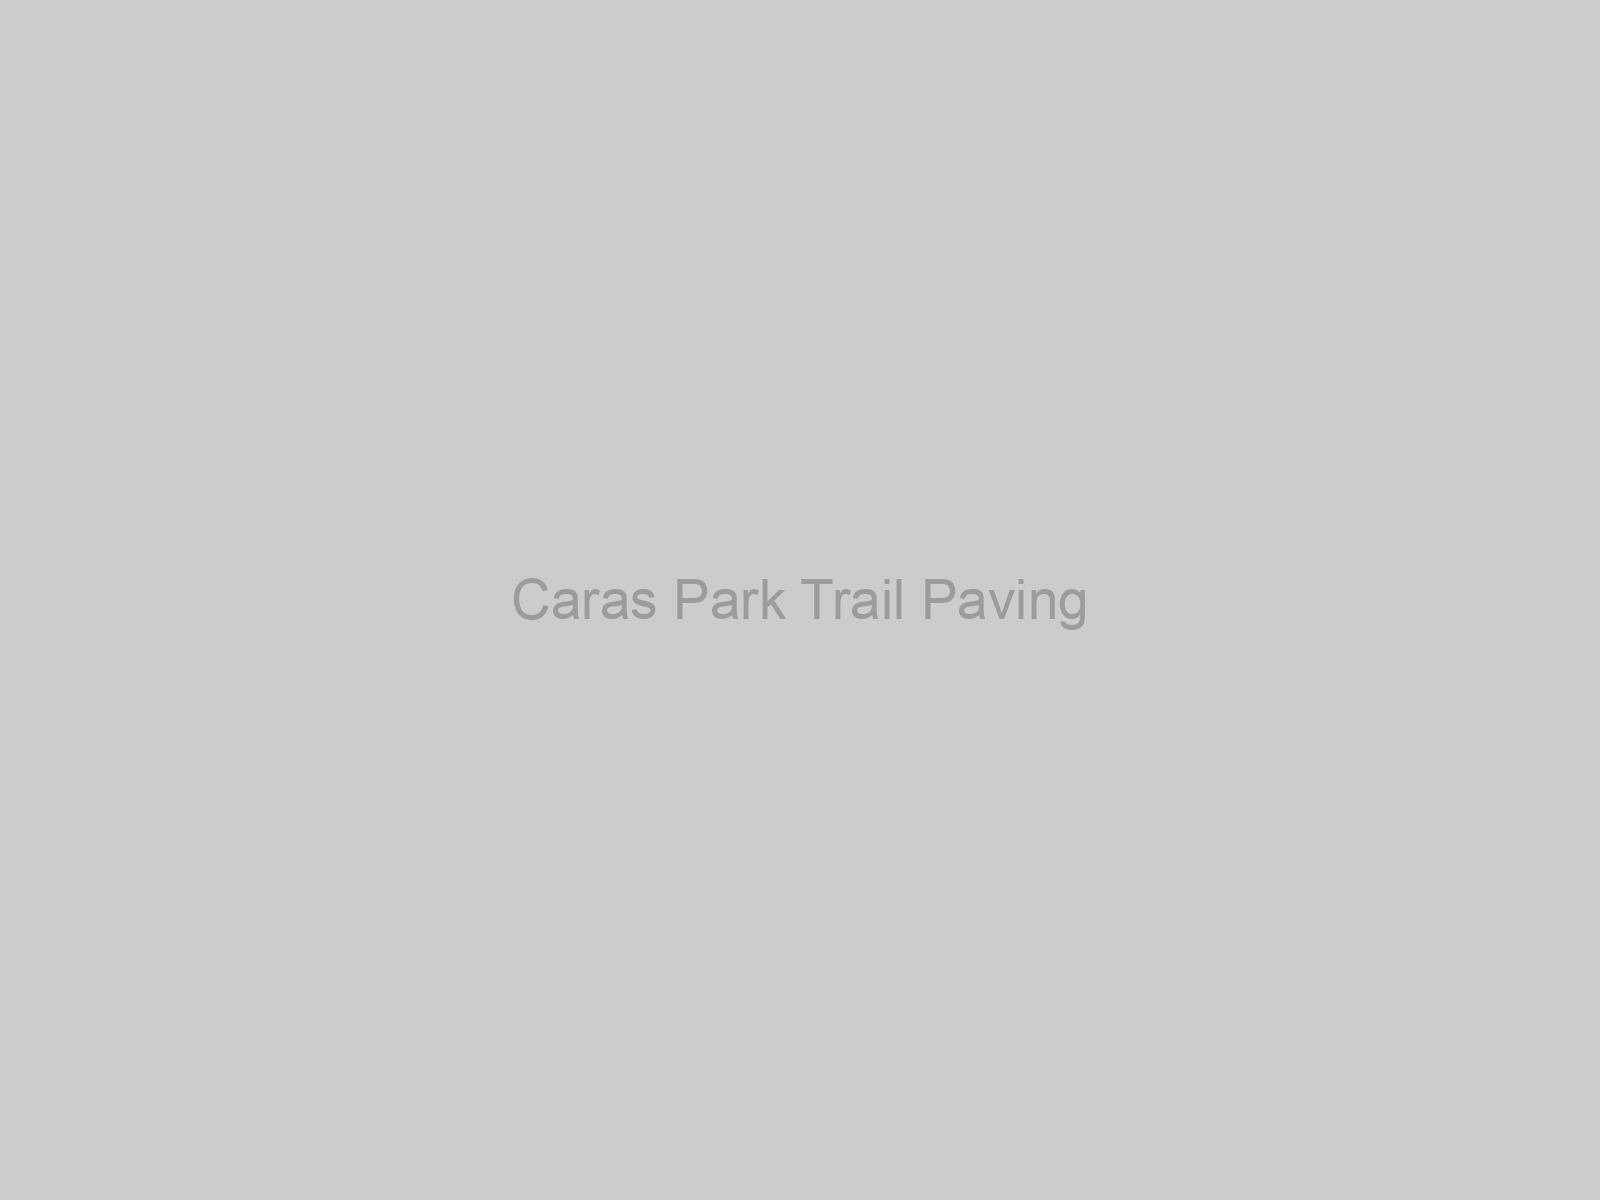 Caras Park Trail Paving